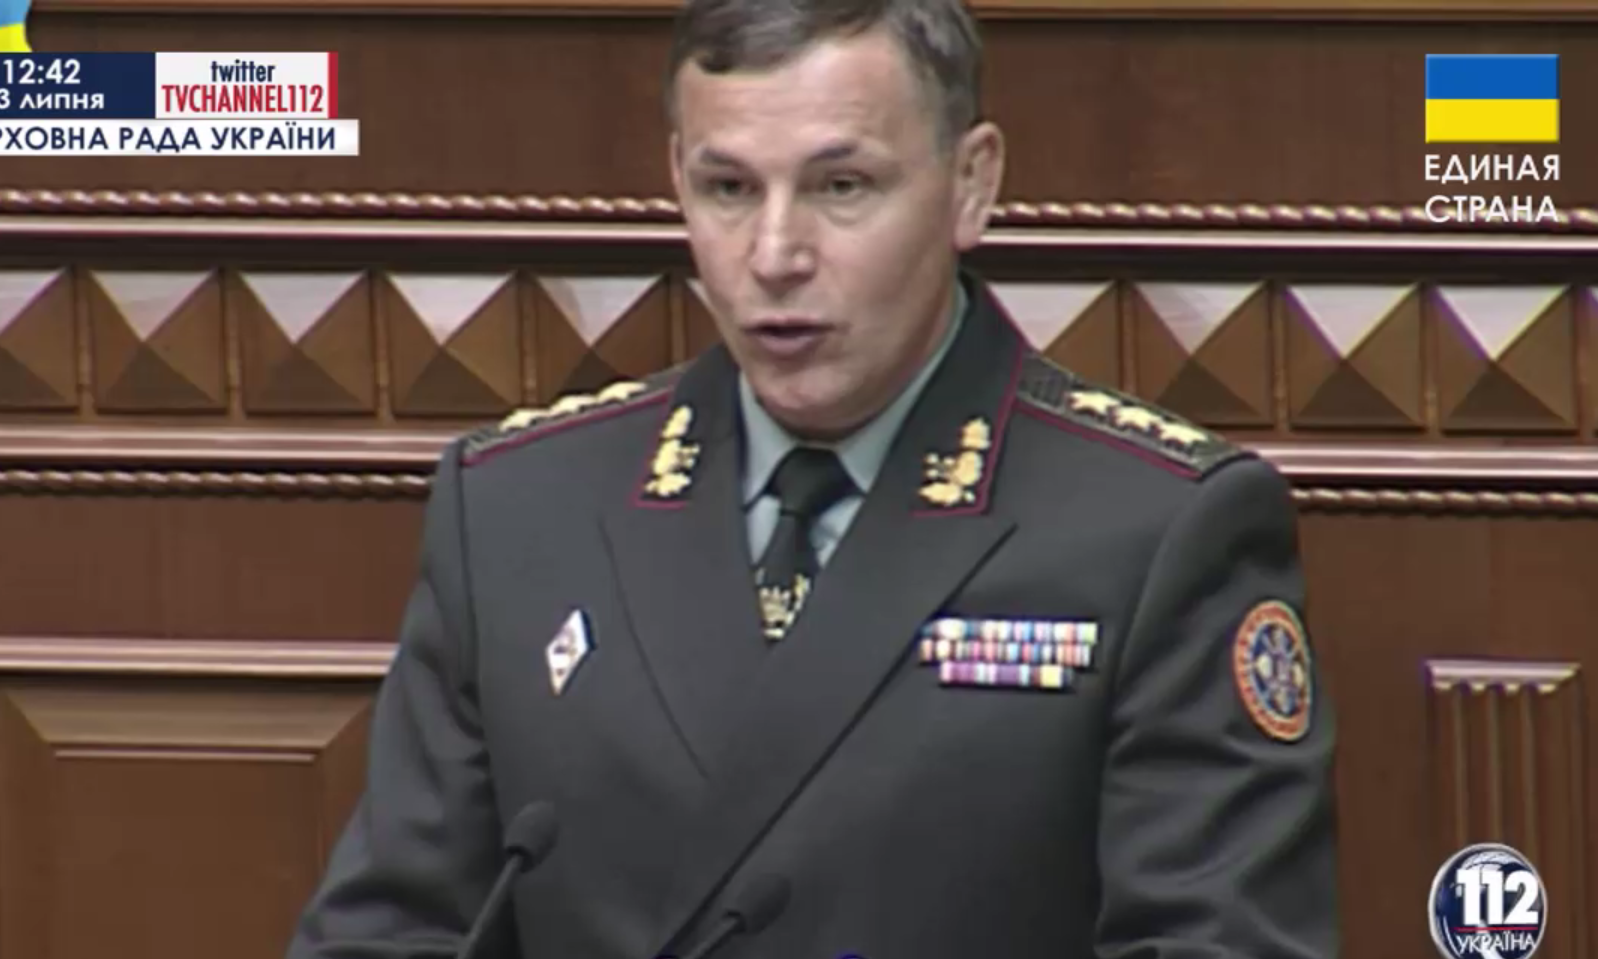 Lemondott az ukrán védelmi miniszter